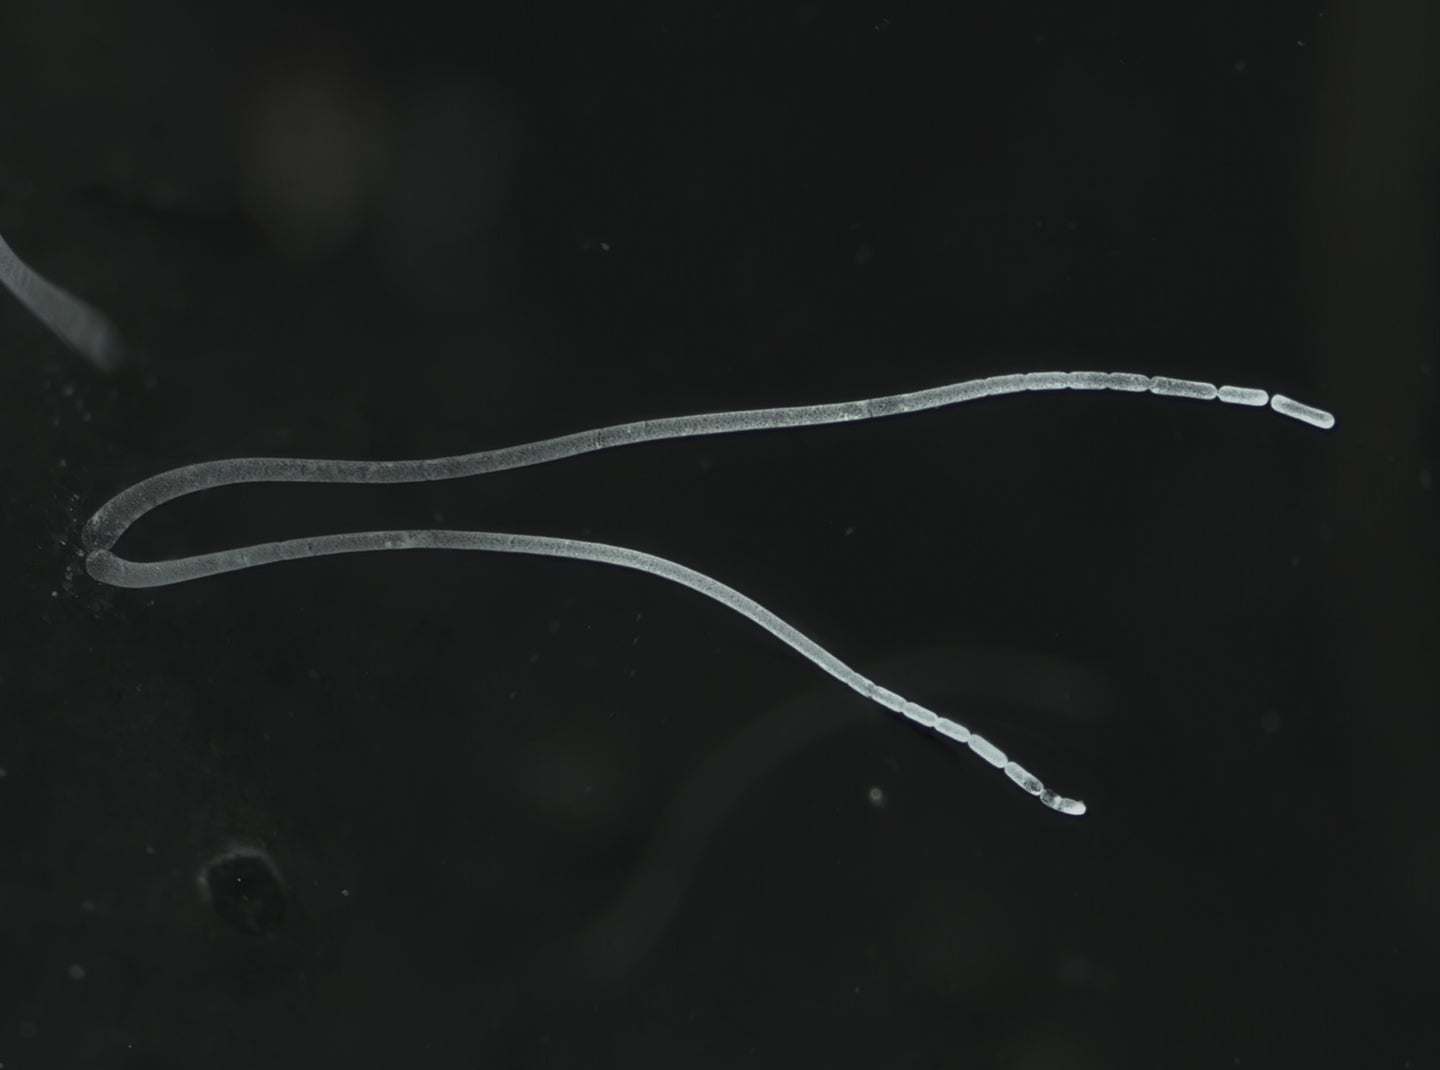 Ca. Thiomargarita magnifica filamentous bacteria on black